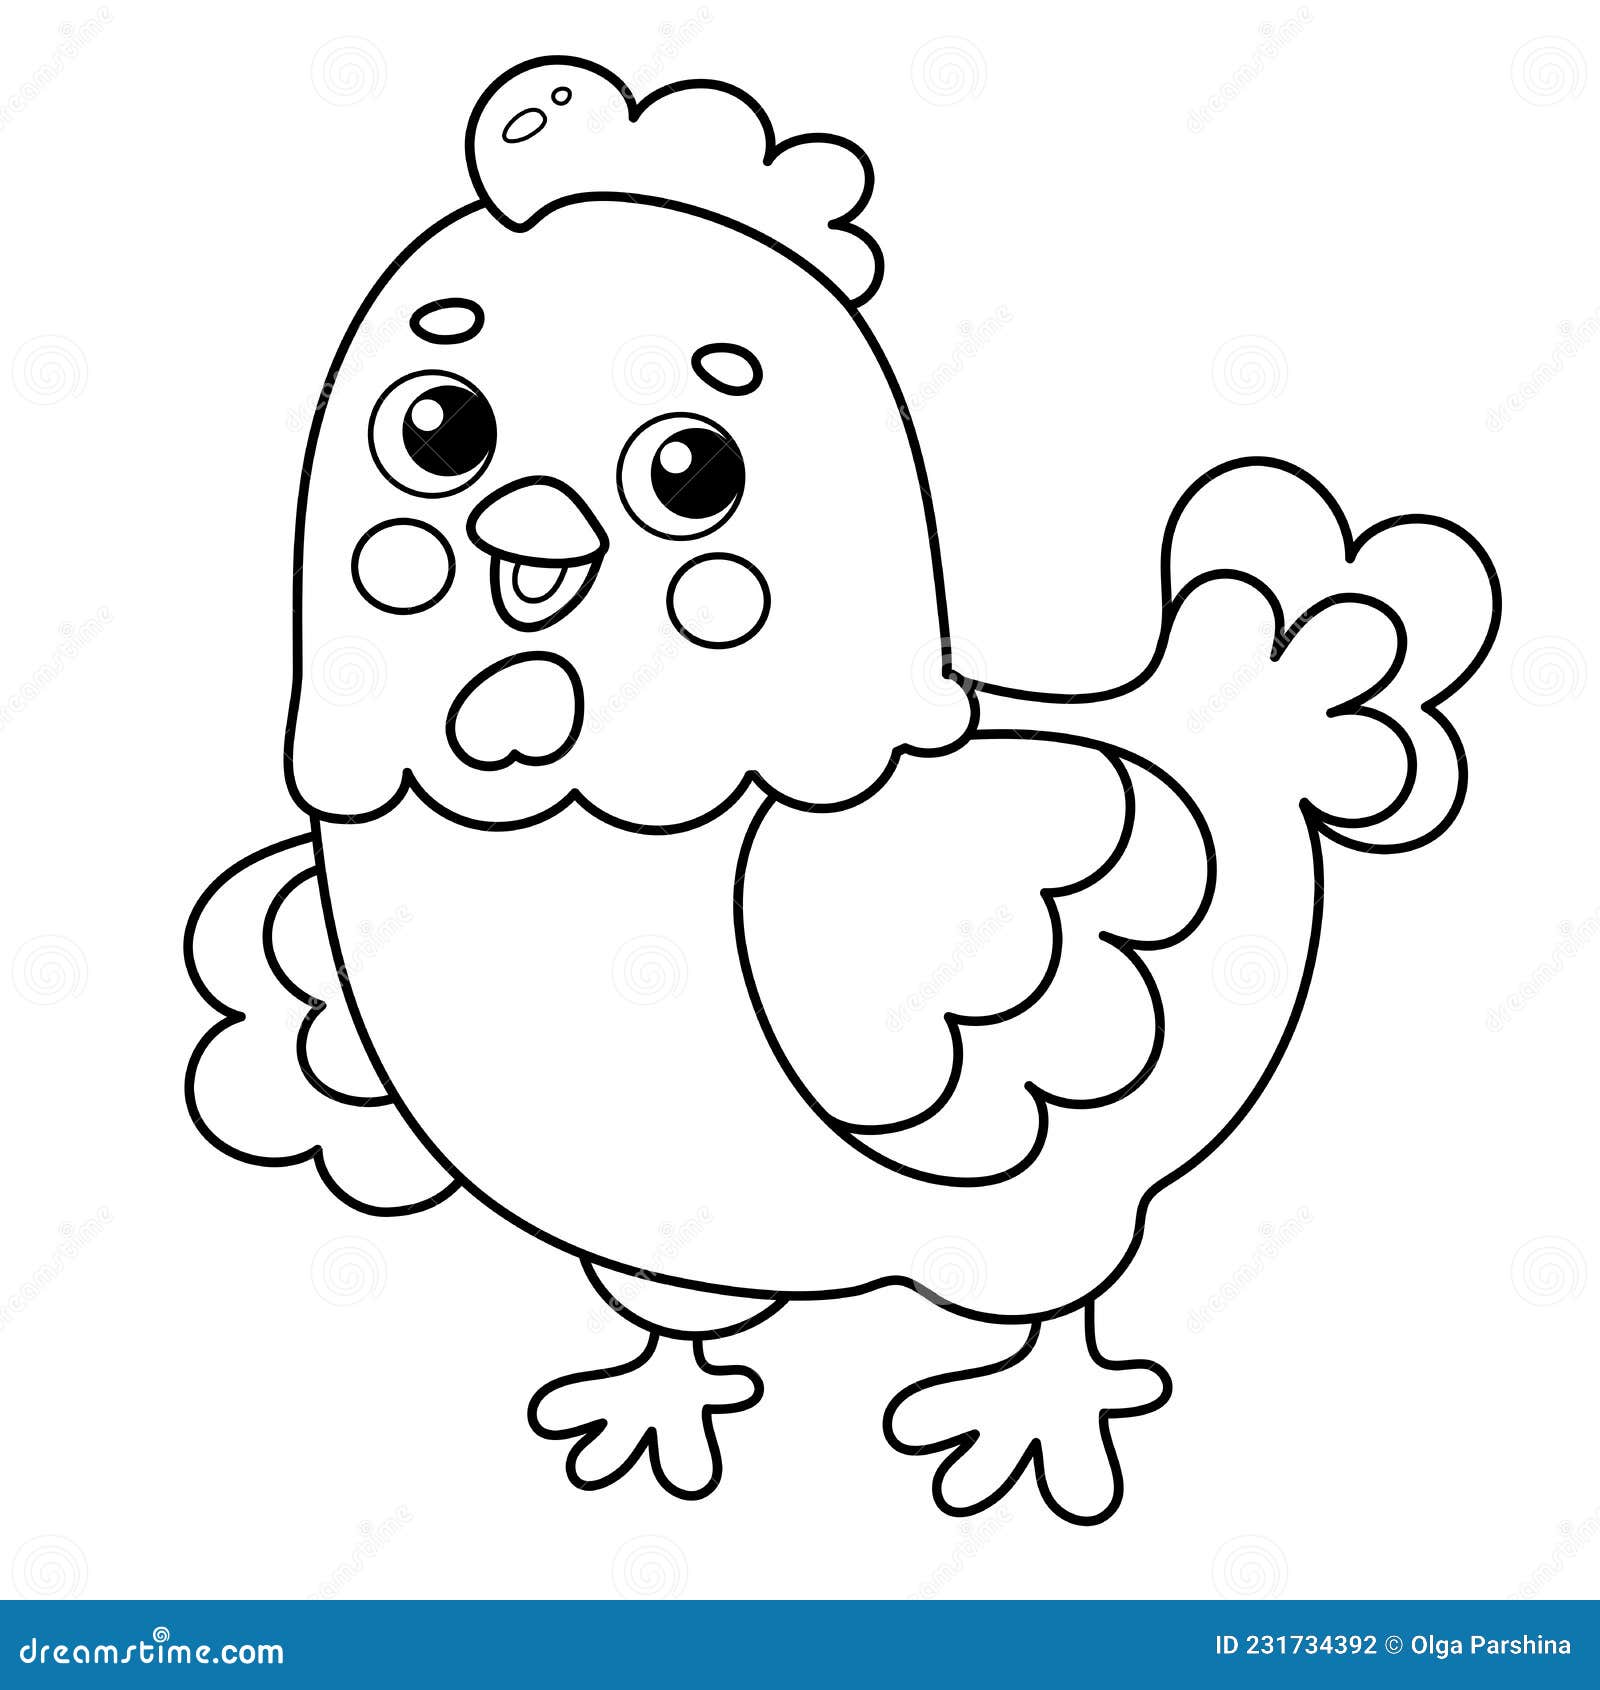 Como desenhar uma galinha FACIL passo a passo para crianças e